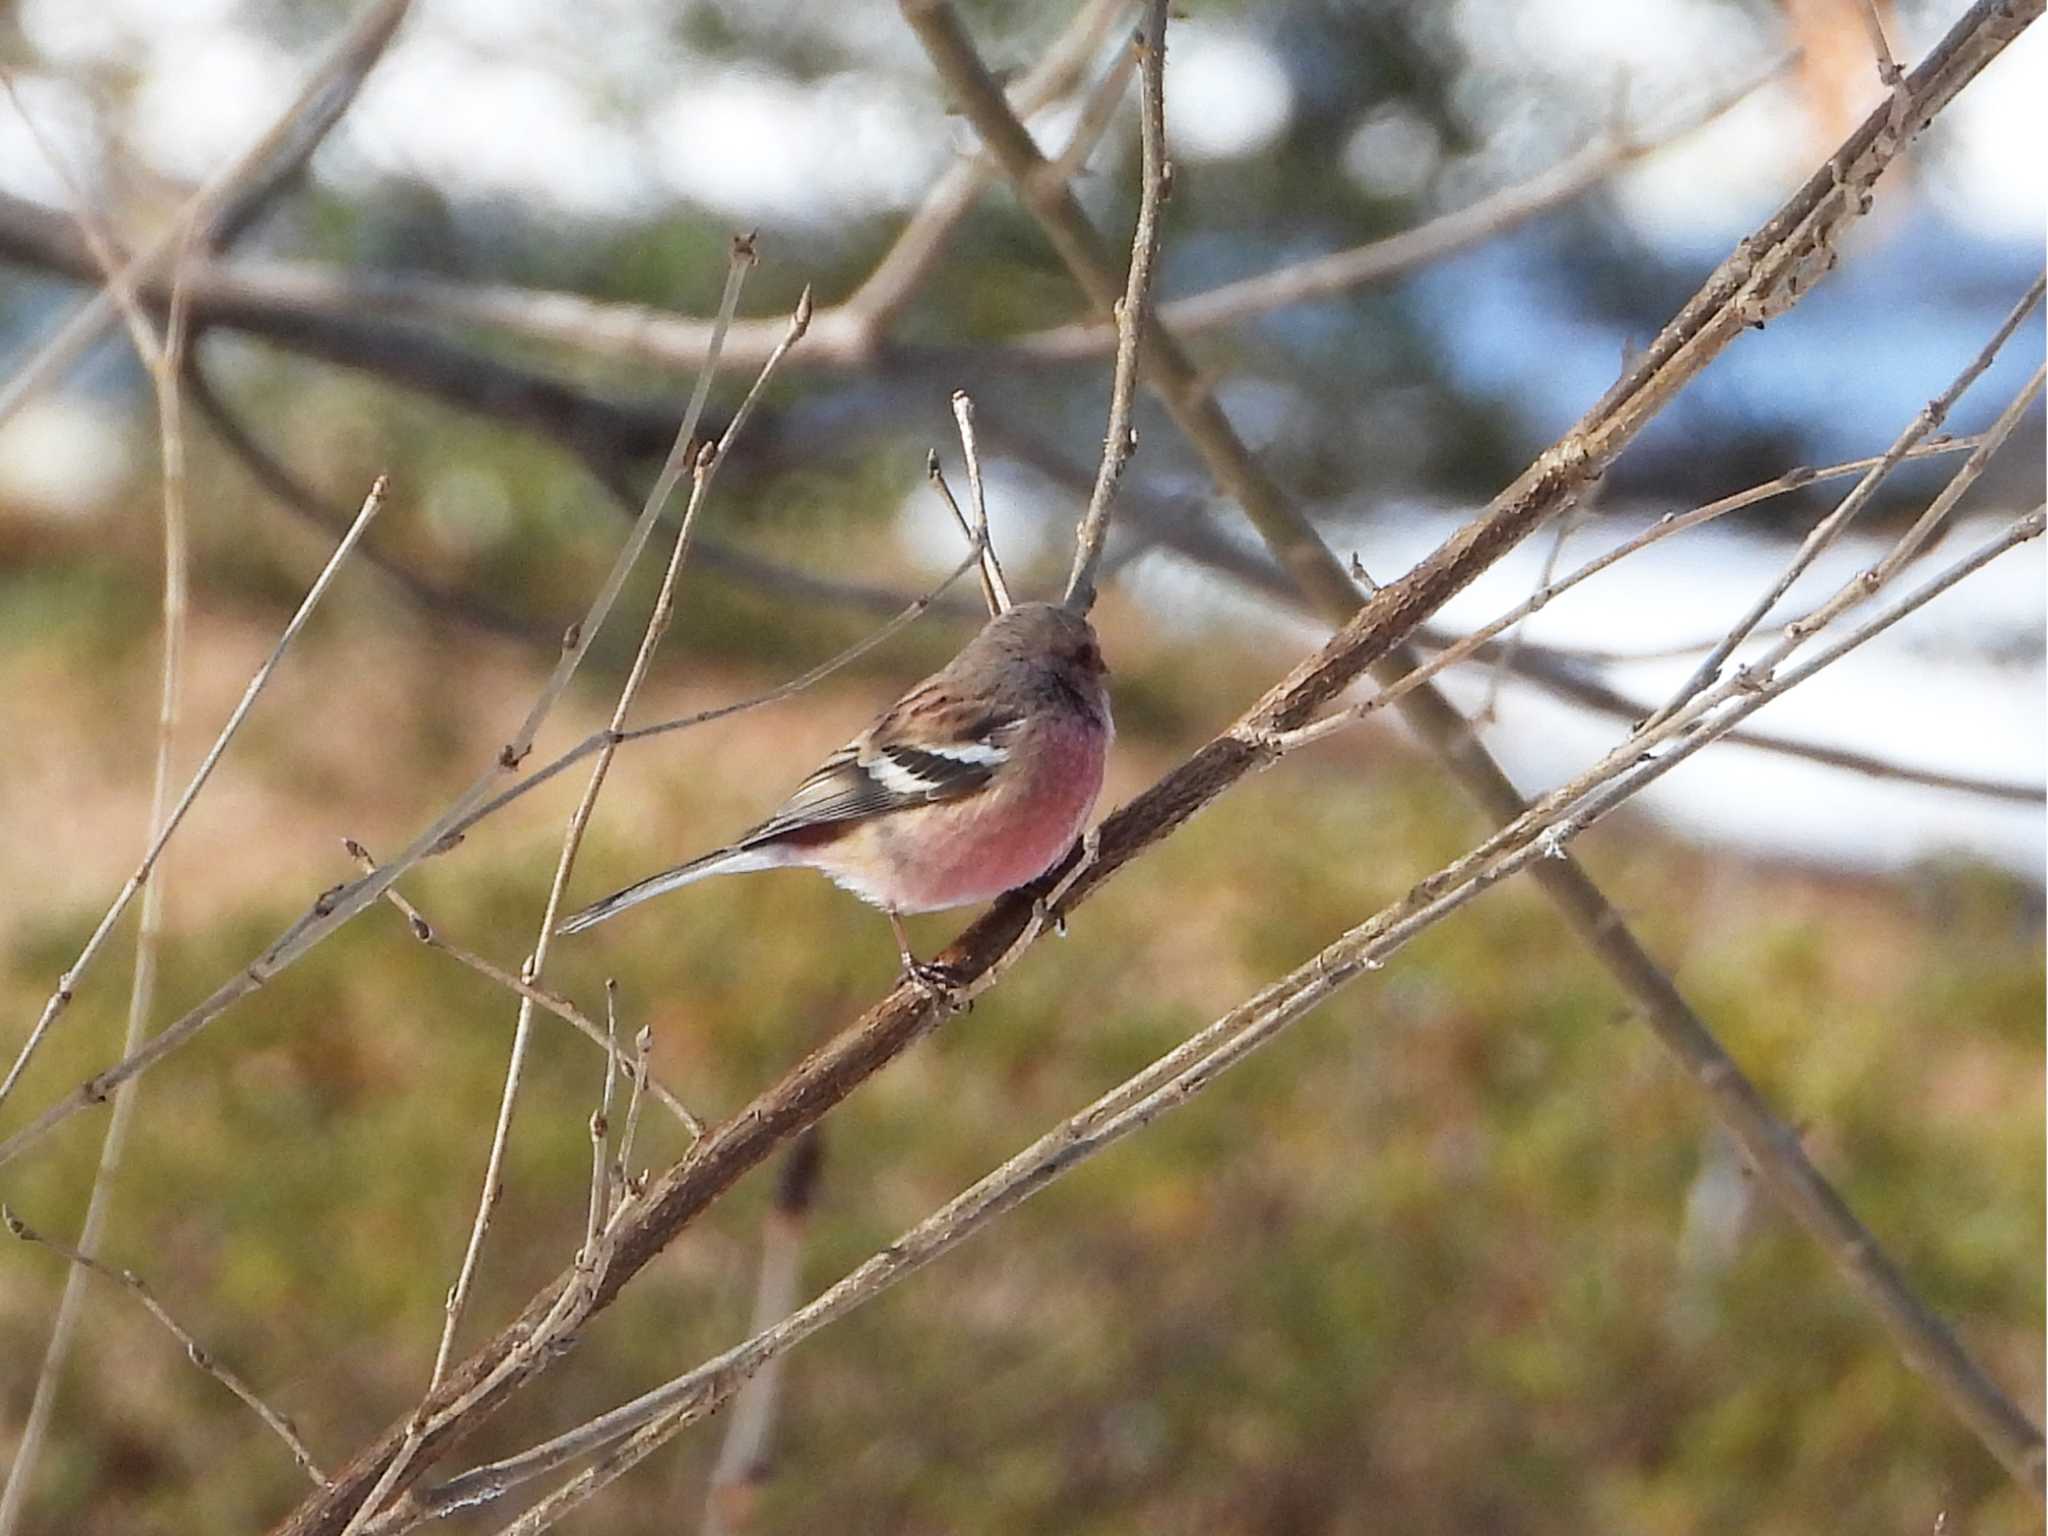 Photo of Siberian Long-tailed Rosefinch at Aobayama Park by くーちゃんねる